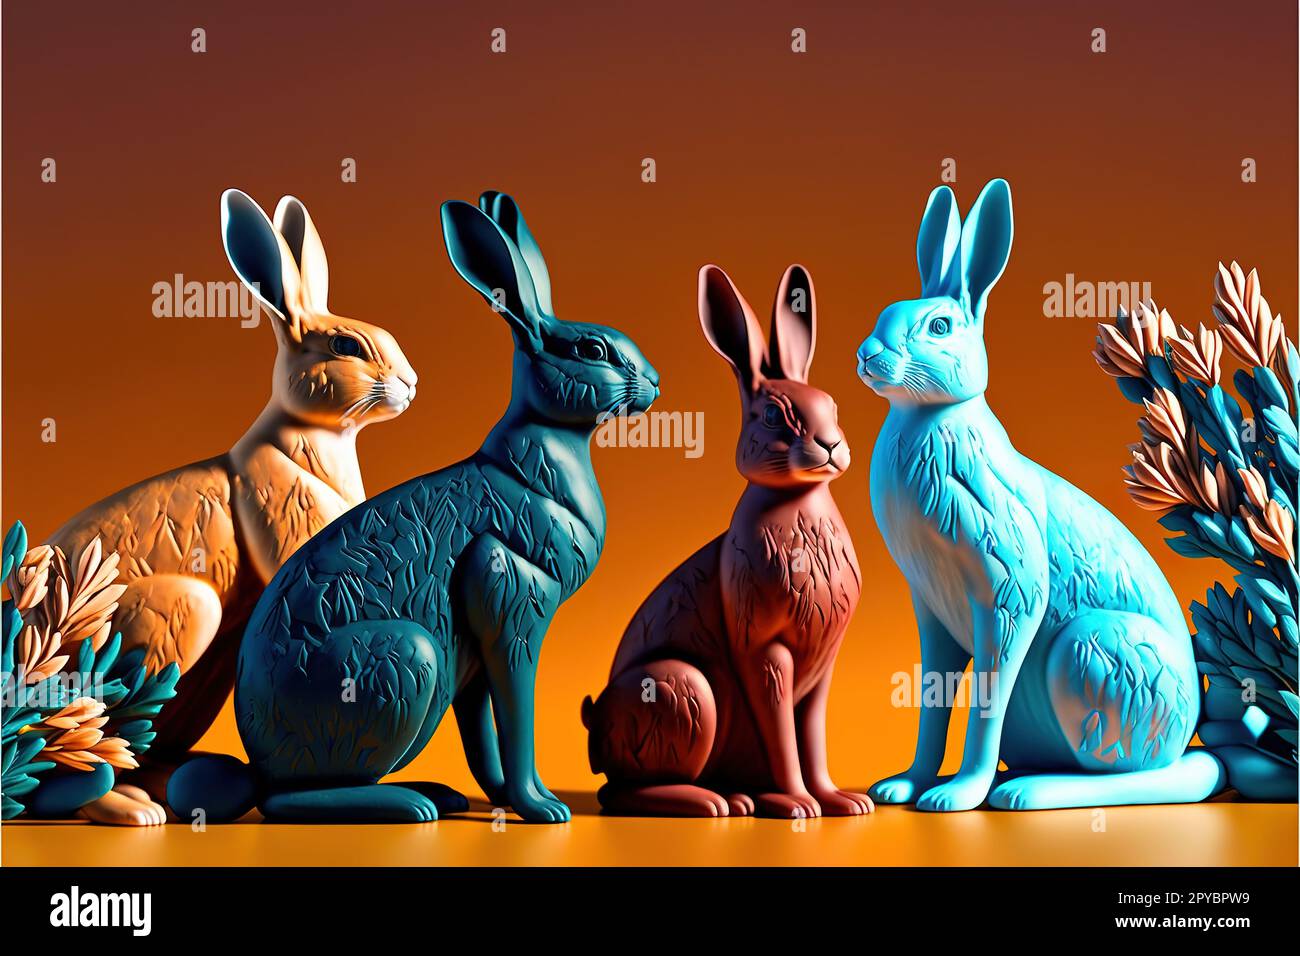 Ensemble de lapins chinois sur fond de couleur Banque D'Images